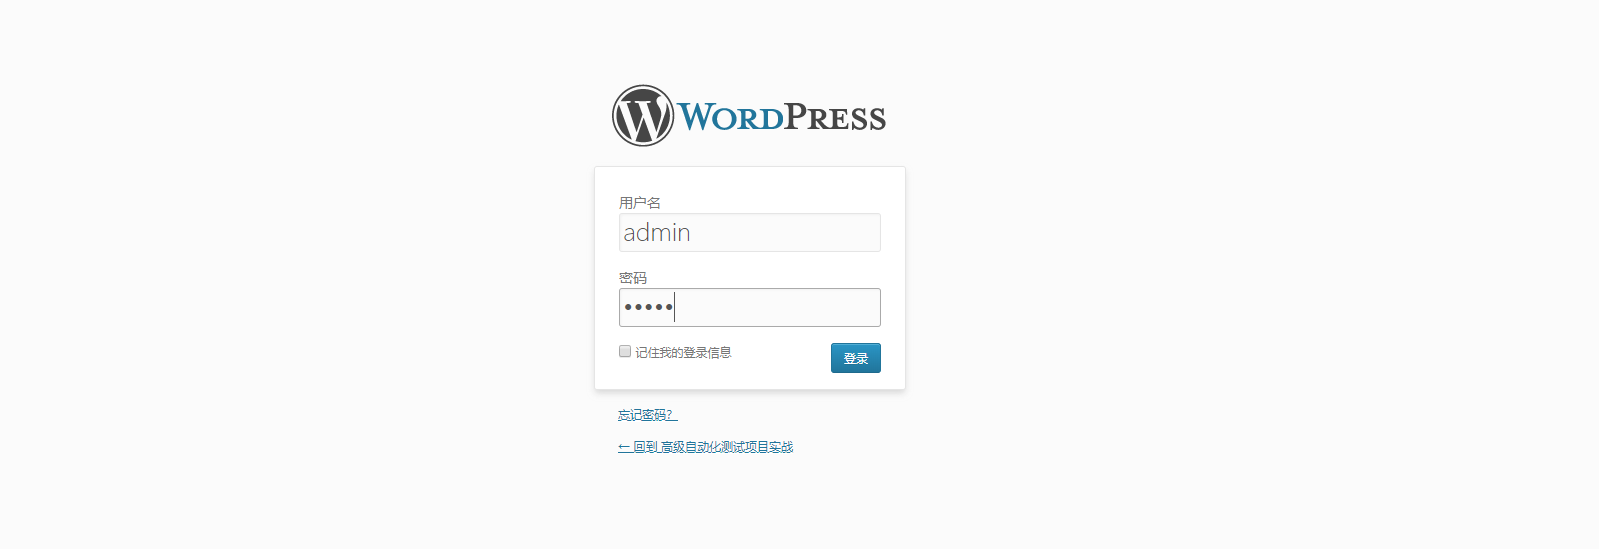 Wordpress login. Wp admin php. Вход в админку. WORDPRESS admin login wp-admin. Вход в вордпресс.